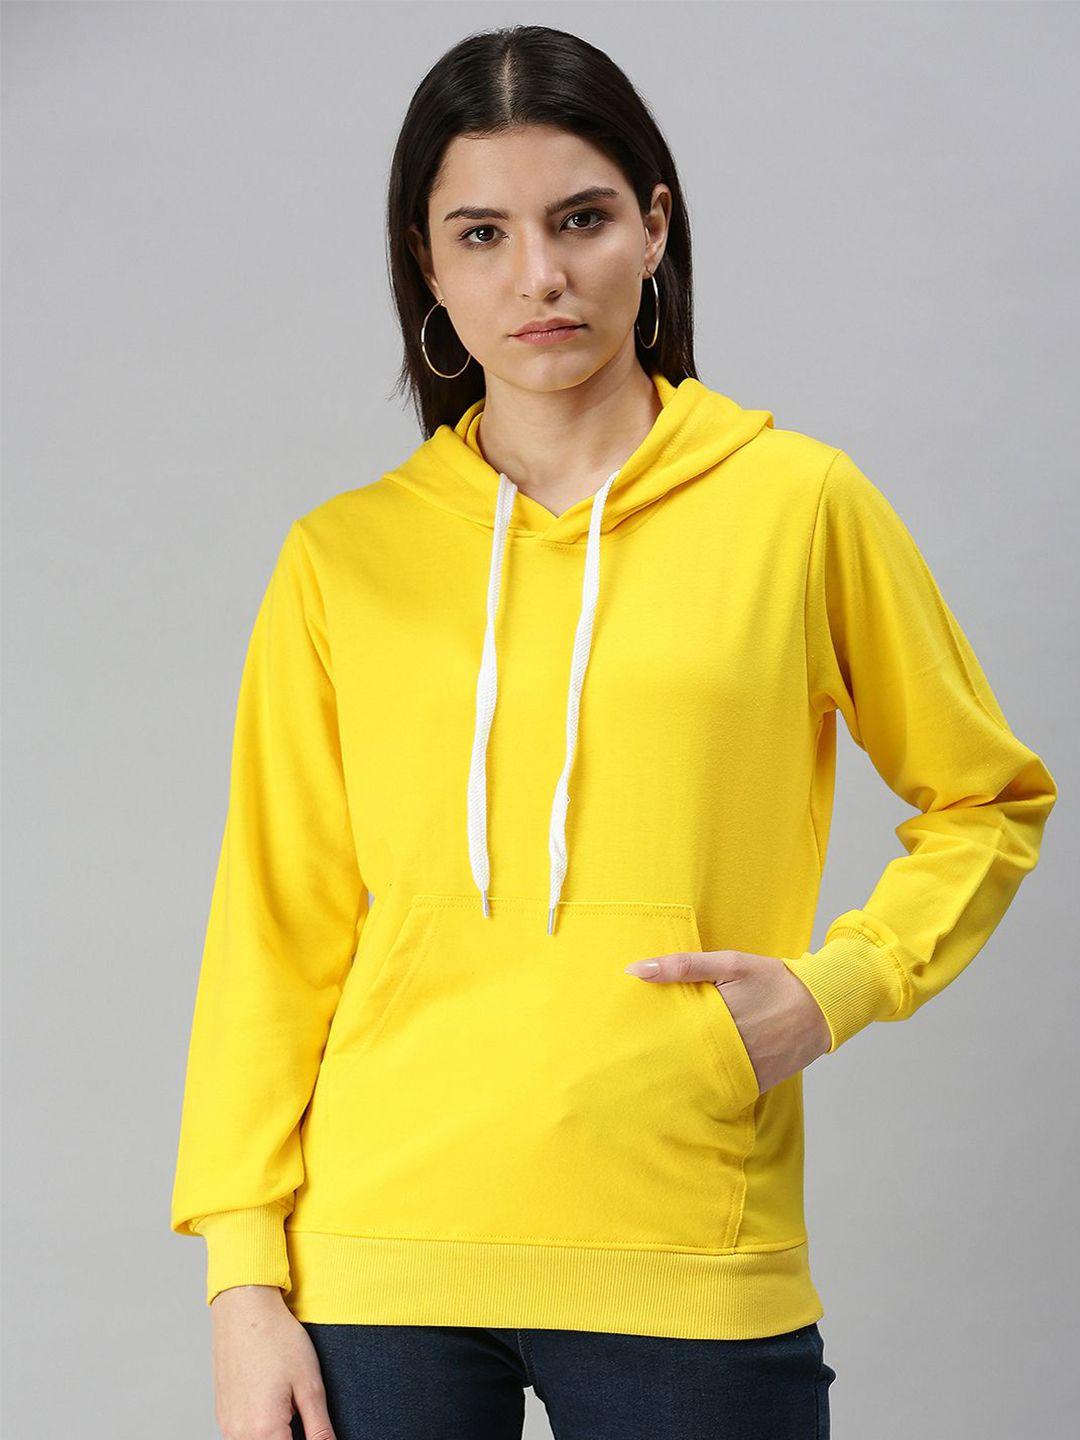 juneberry women yellow hooded fleece sweatshirt